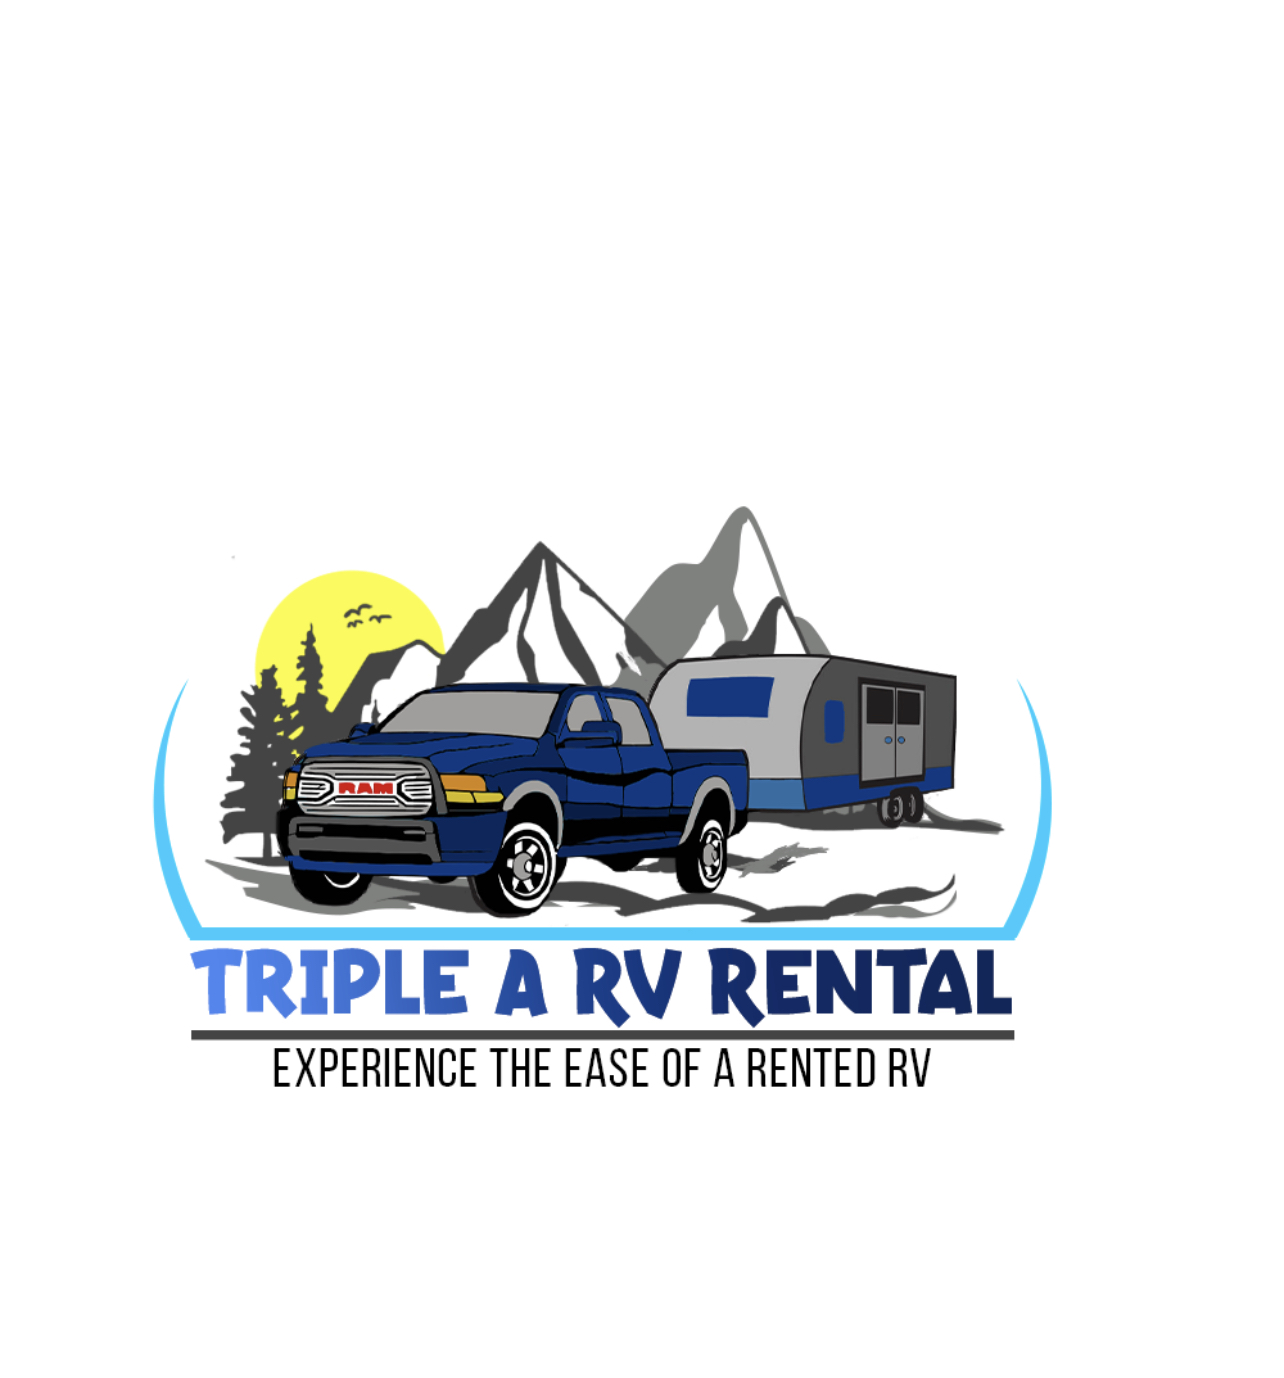 Triple A Rv Rental Logo white